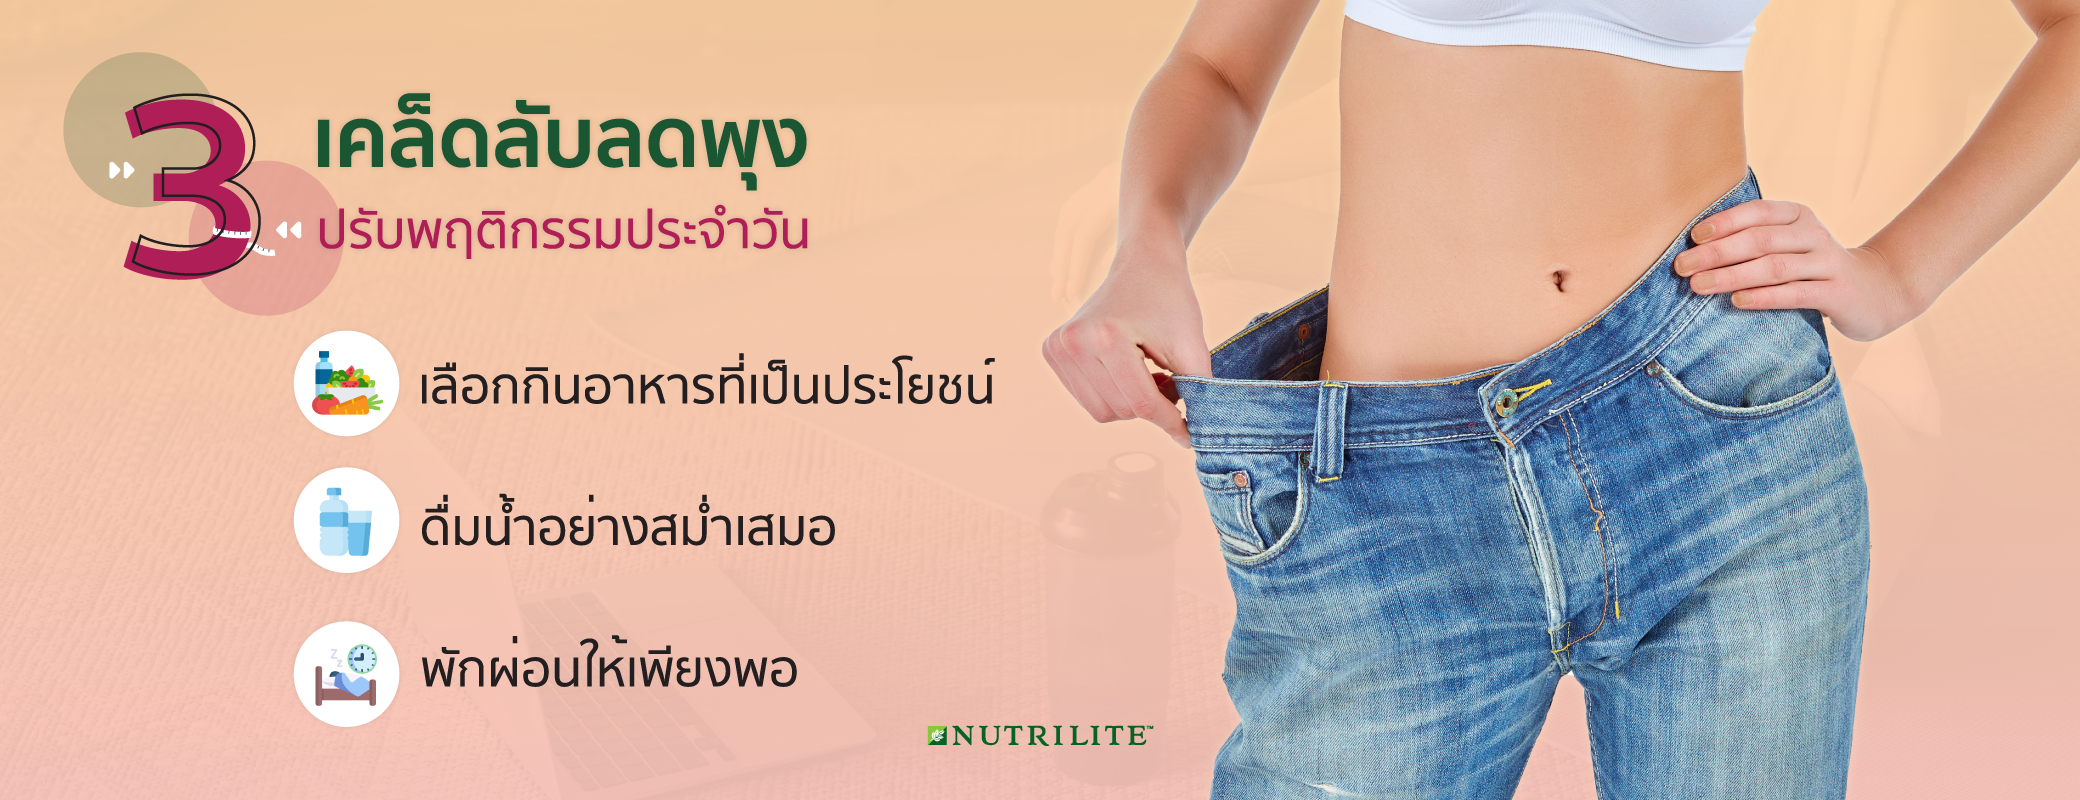 7 วิธีลดพุงสำหรับผู้หญิง ที่เห็นผลลัพธ์และทำได้สำหรับคนไม่มีเวลา |  Nutrilite™ Thailand